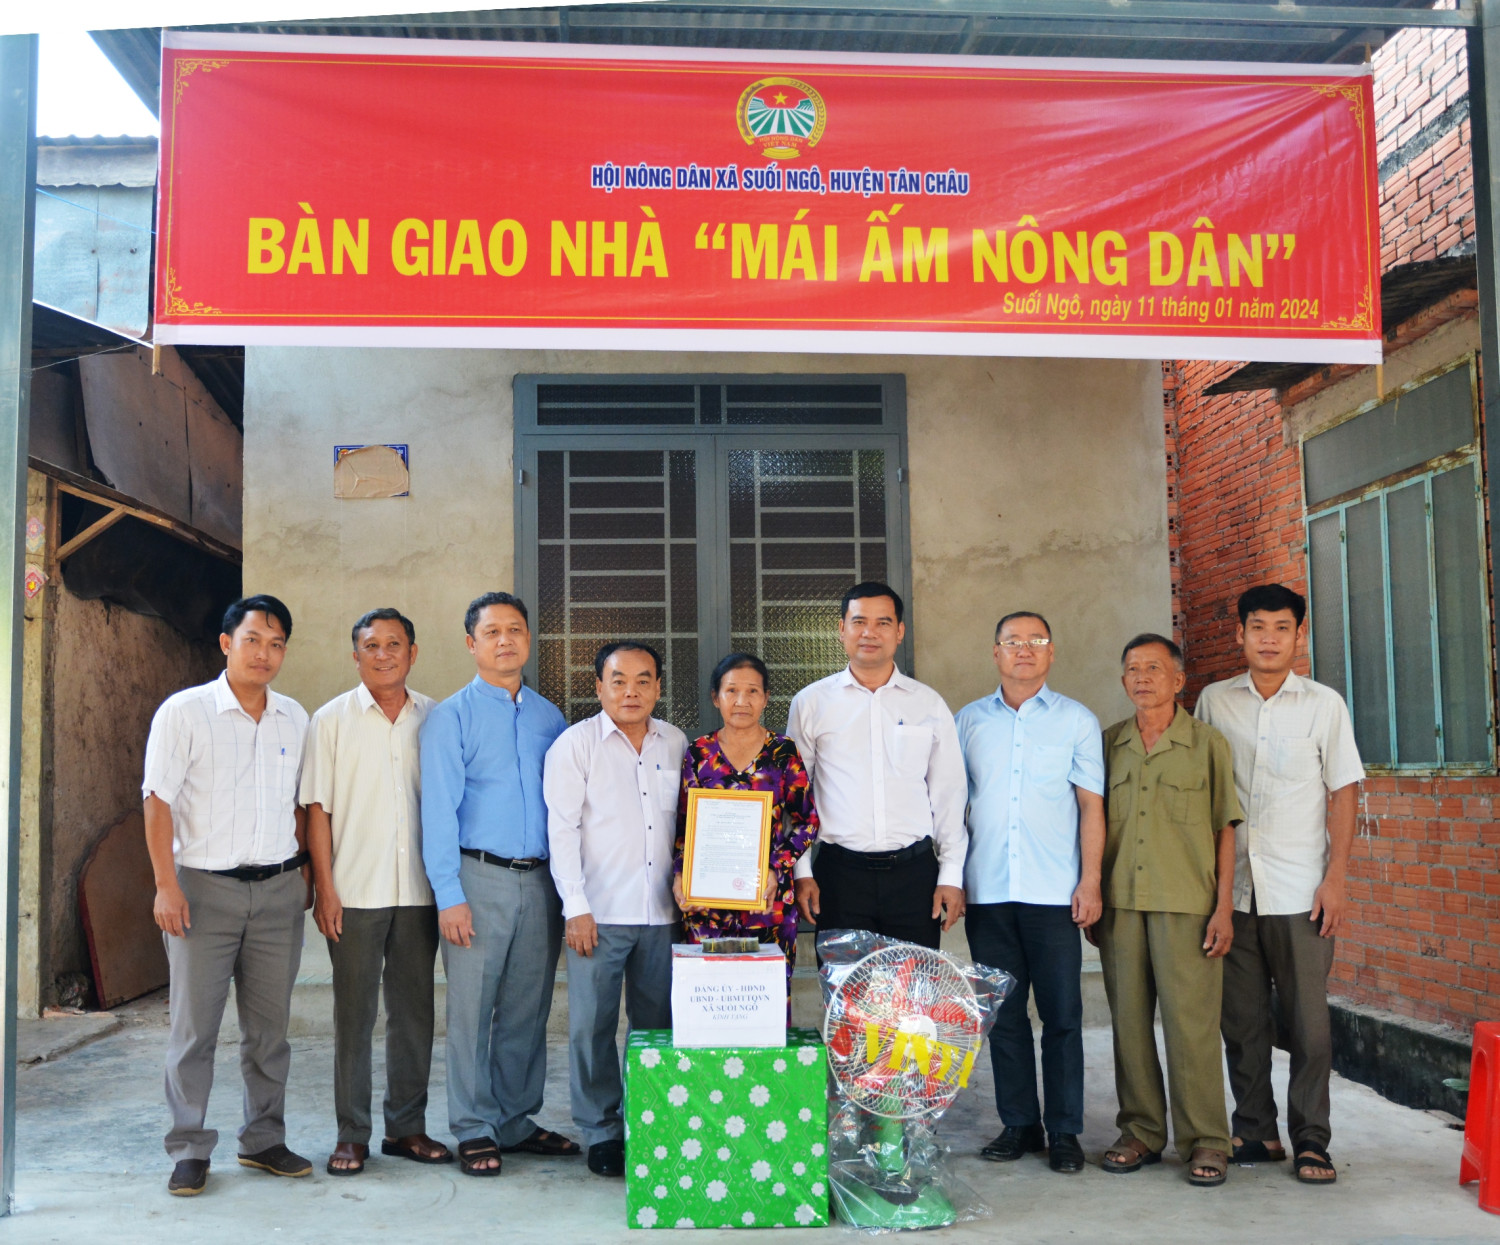 Bàn giao nhà “Mái ấm nông dân” cho hội viên nghèo trên địa bàn xã Suối Ngô